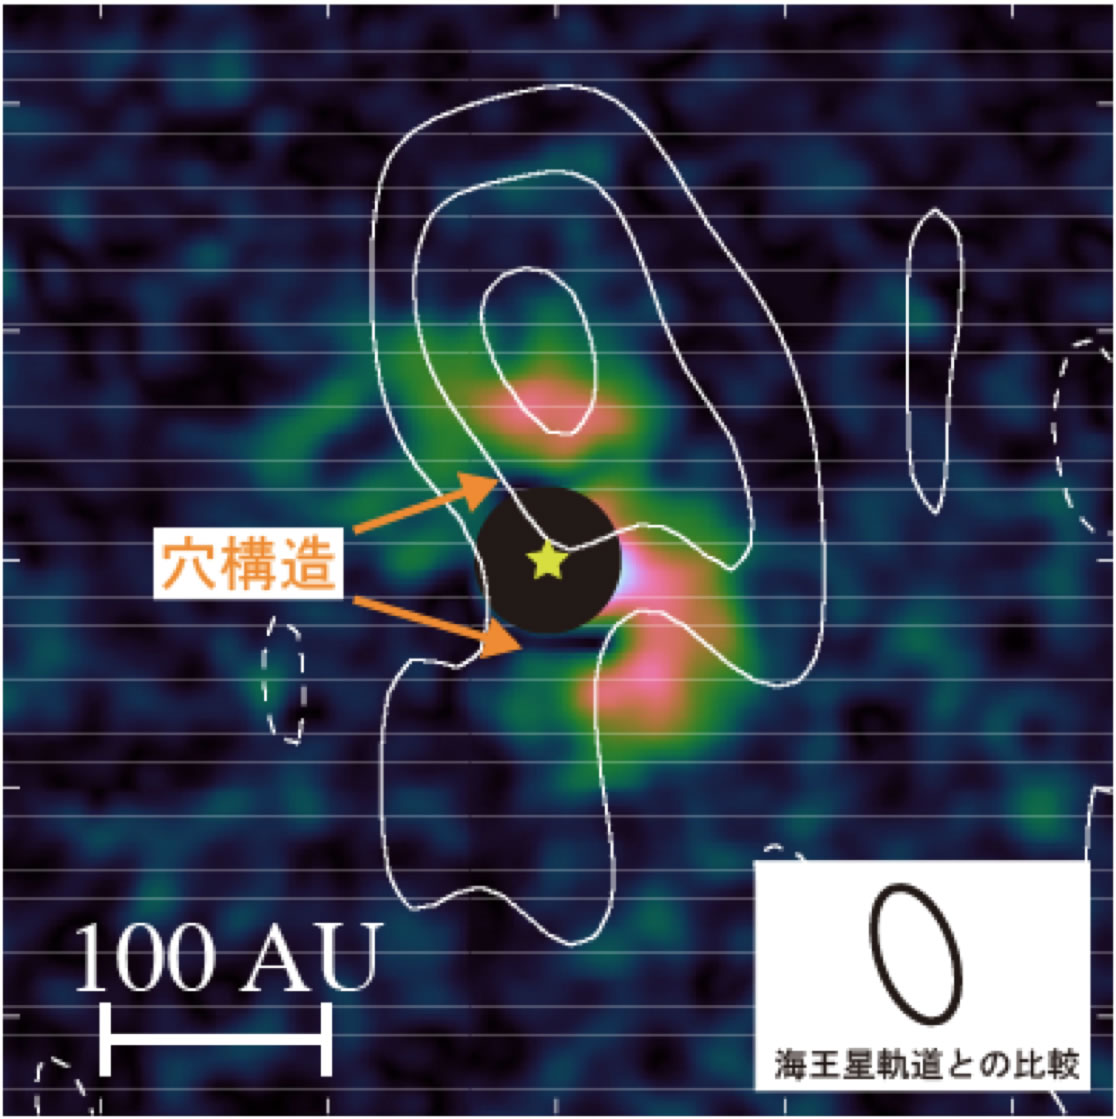 図: Sz91の赤外線(2.2µm)イメージ(カラー)と電波(860µm)放射強度分布(コントア線)。赤外線イメージの中心部は誤差が大きい為隠してある。中心の星マークが天体(Sz 91)の位置を表している。右下はサイズ比較のための海王星軌道を示している。 